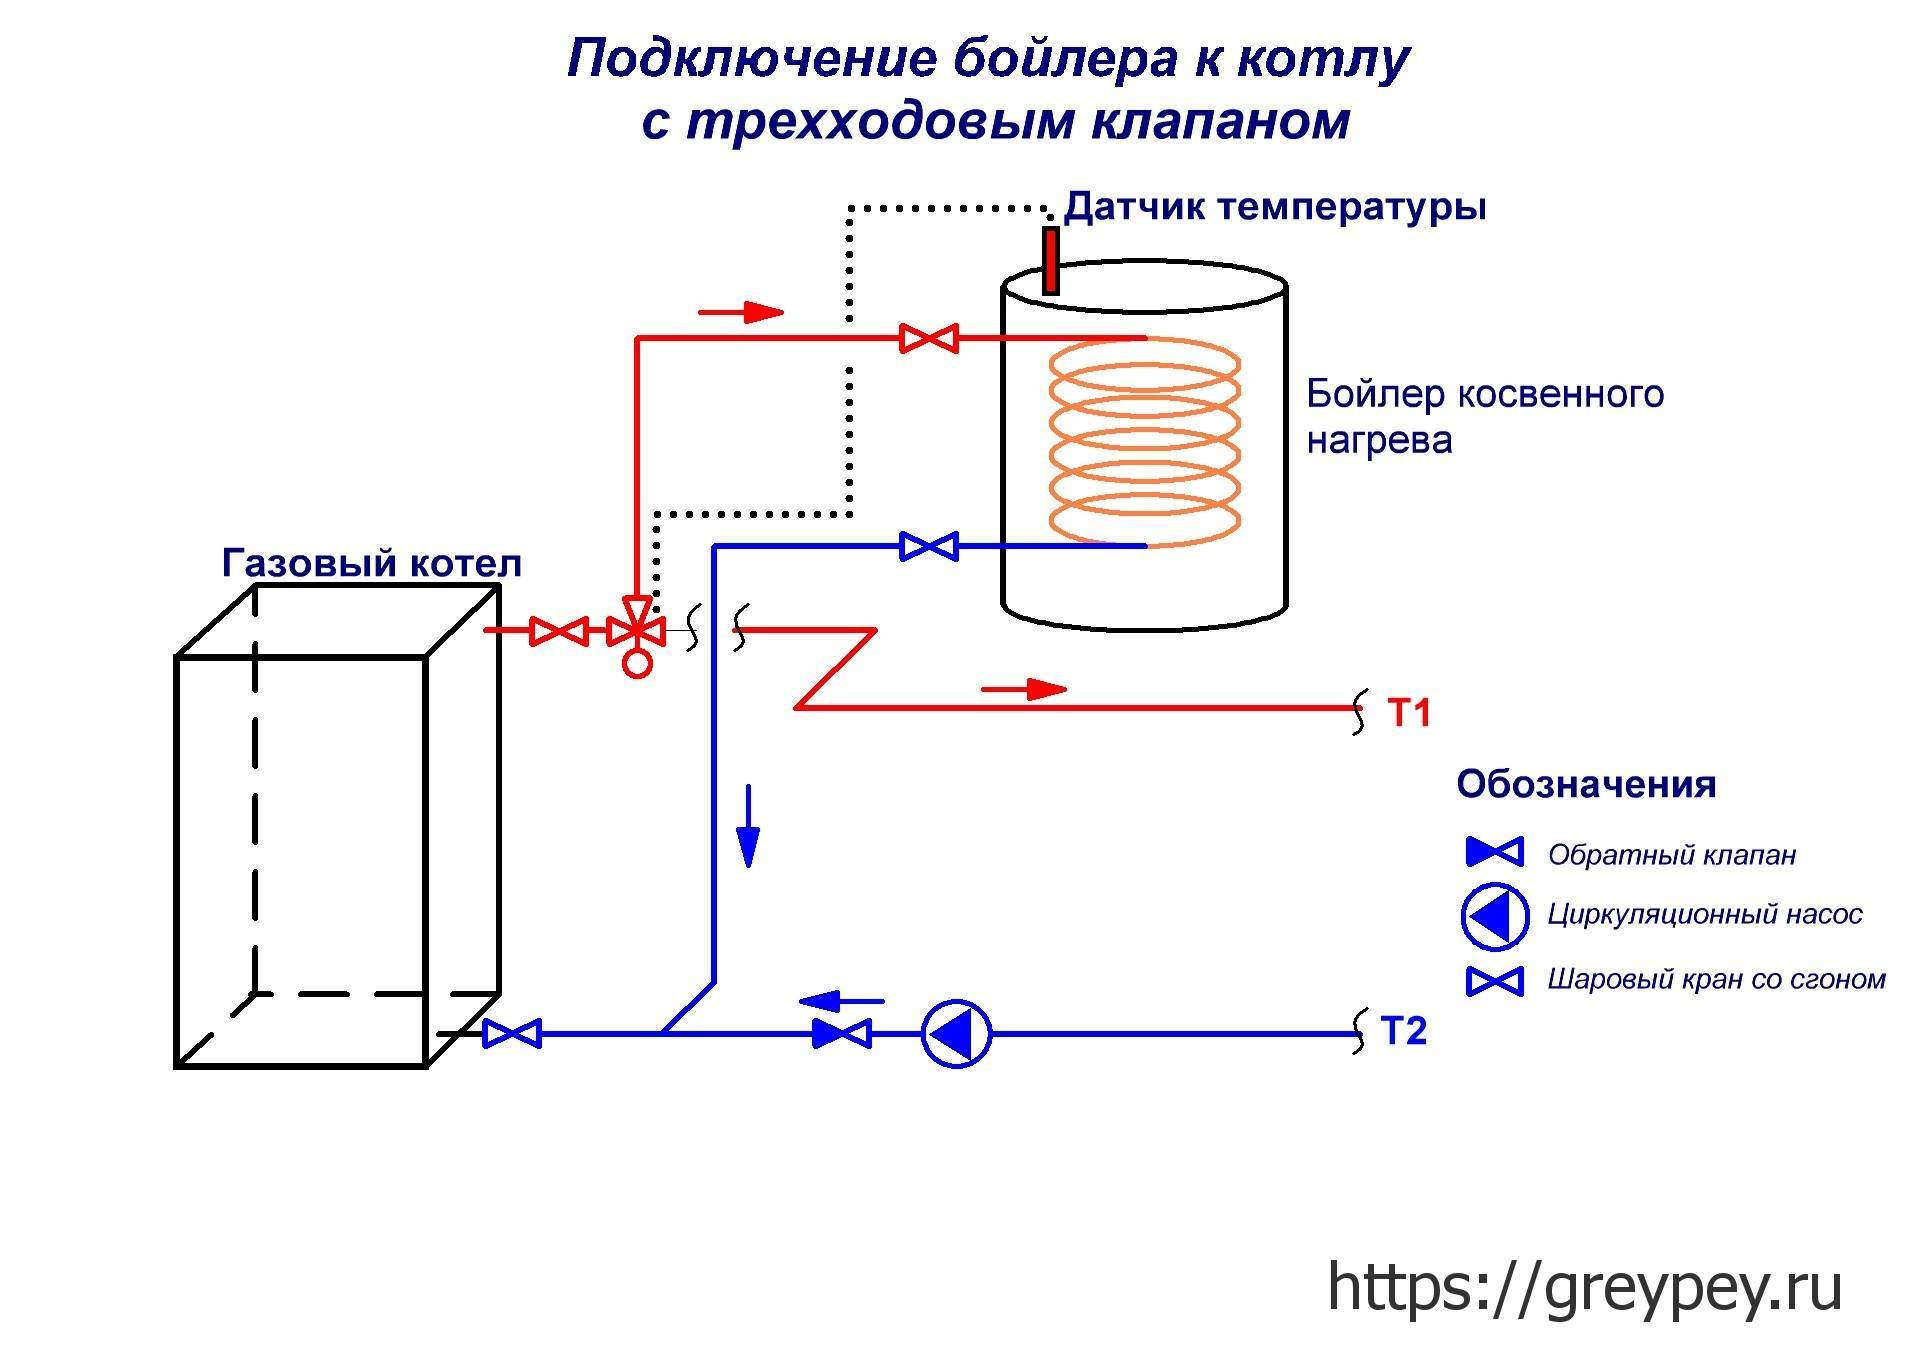 Как выбрать электрический водонагреватель для квартиры и дачи| ichip.ru